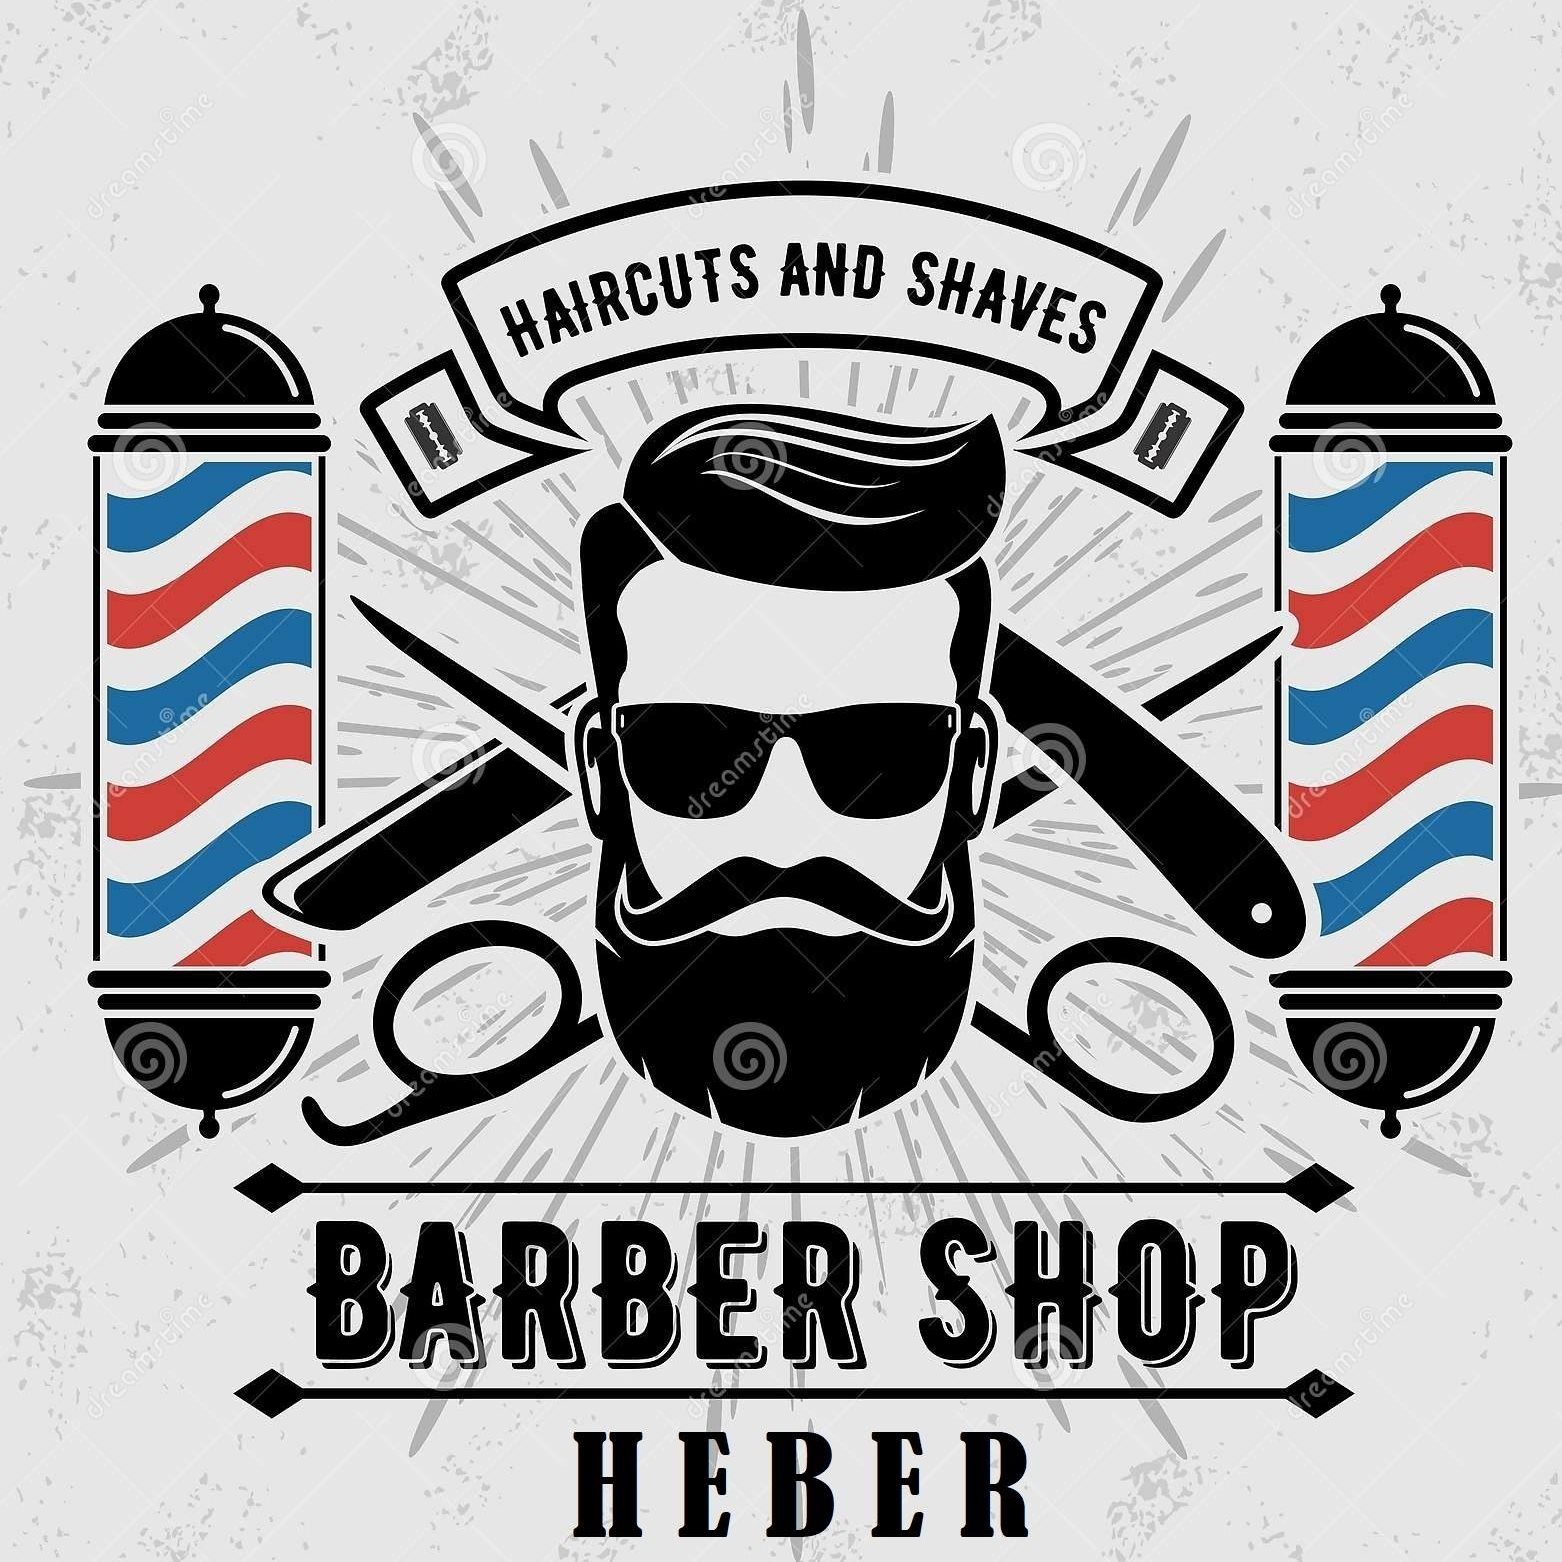 Heber Barber Shop 79 E Main St, Heber California 92249